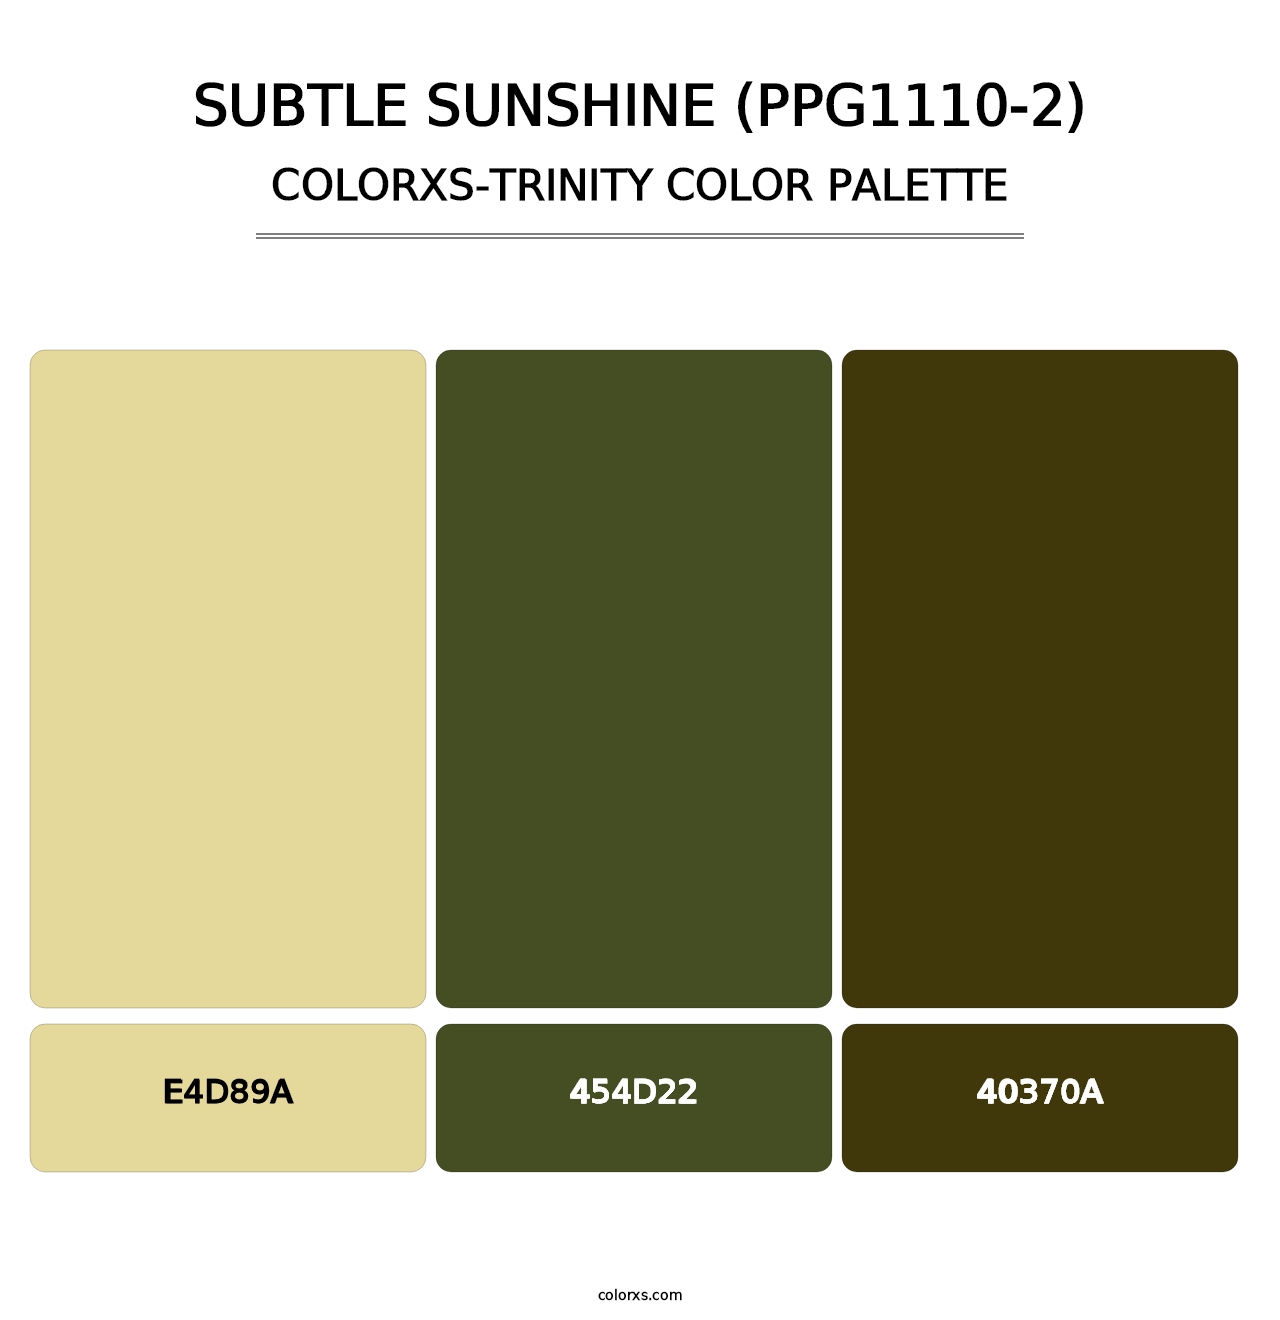 Subtle Sunshine (PPG1110-2) - Colorxs Trinity Palette